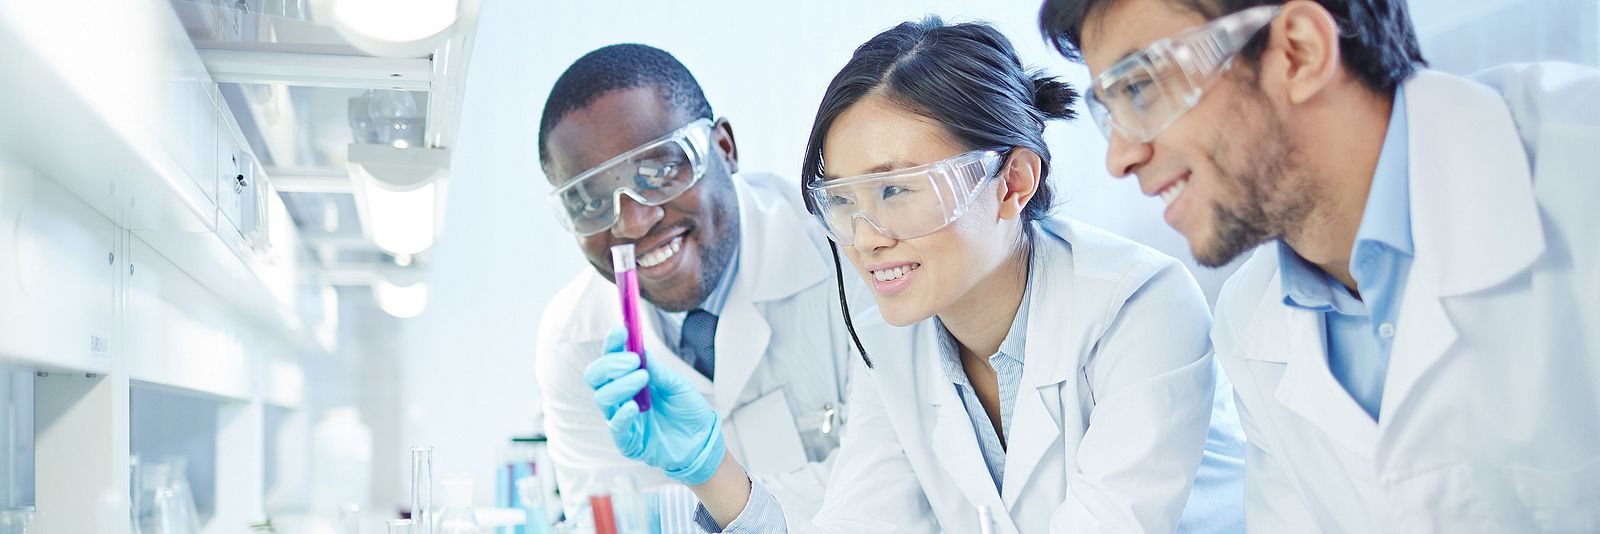 Científicos internacionales en un laboratorio